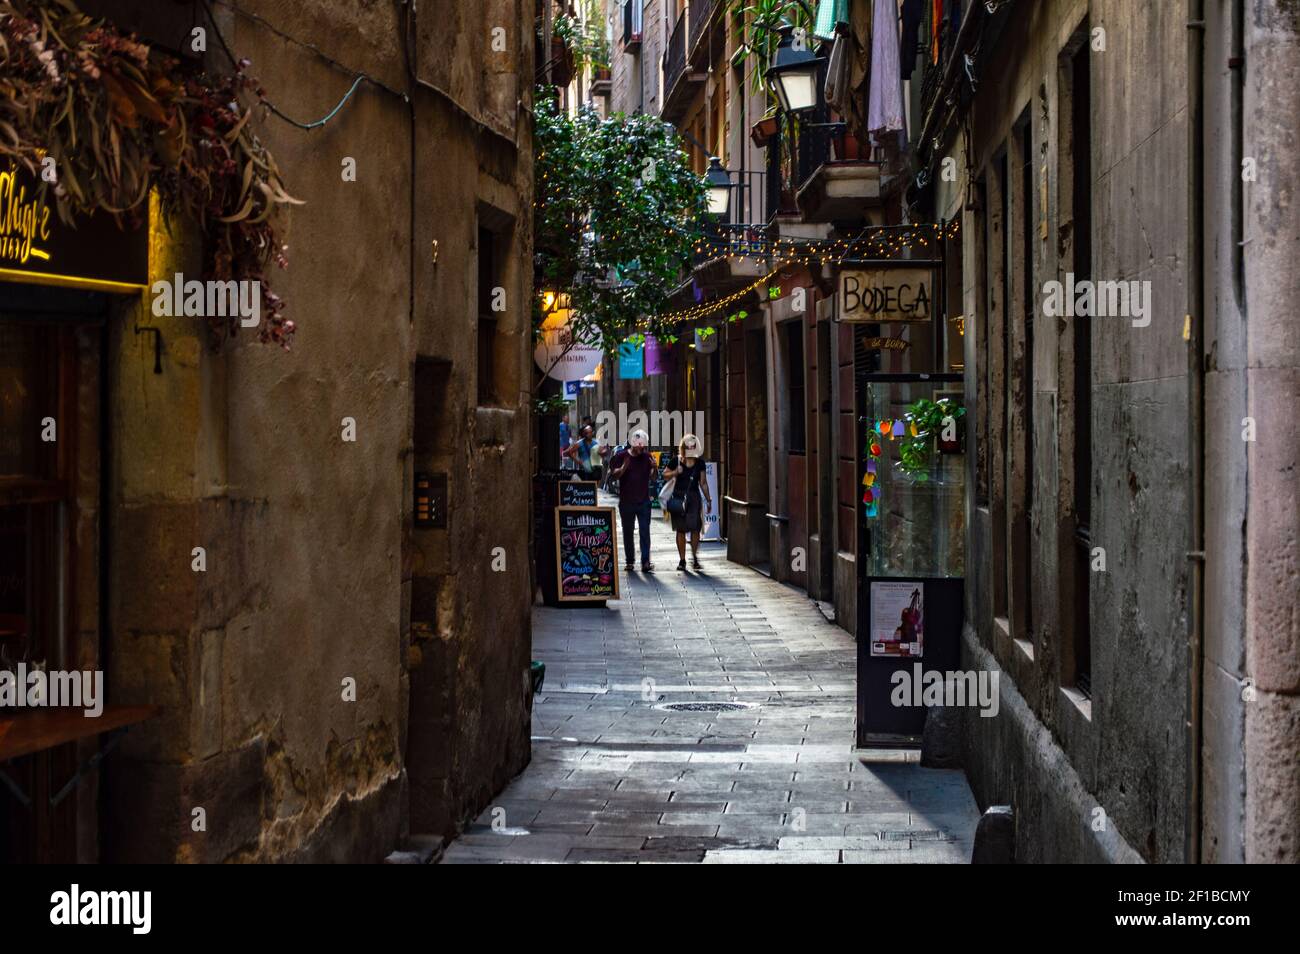 Barcellona, Spagna - 25 luglio 2019: Vivace strada con luci, caffè e negozi nel quartiere romano della città di Barcellona, Spagna Foto Stock